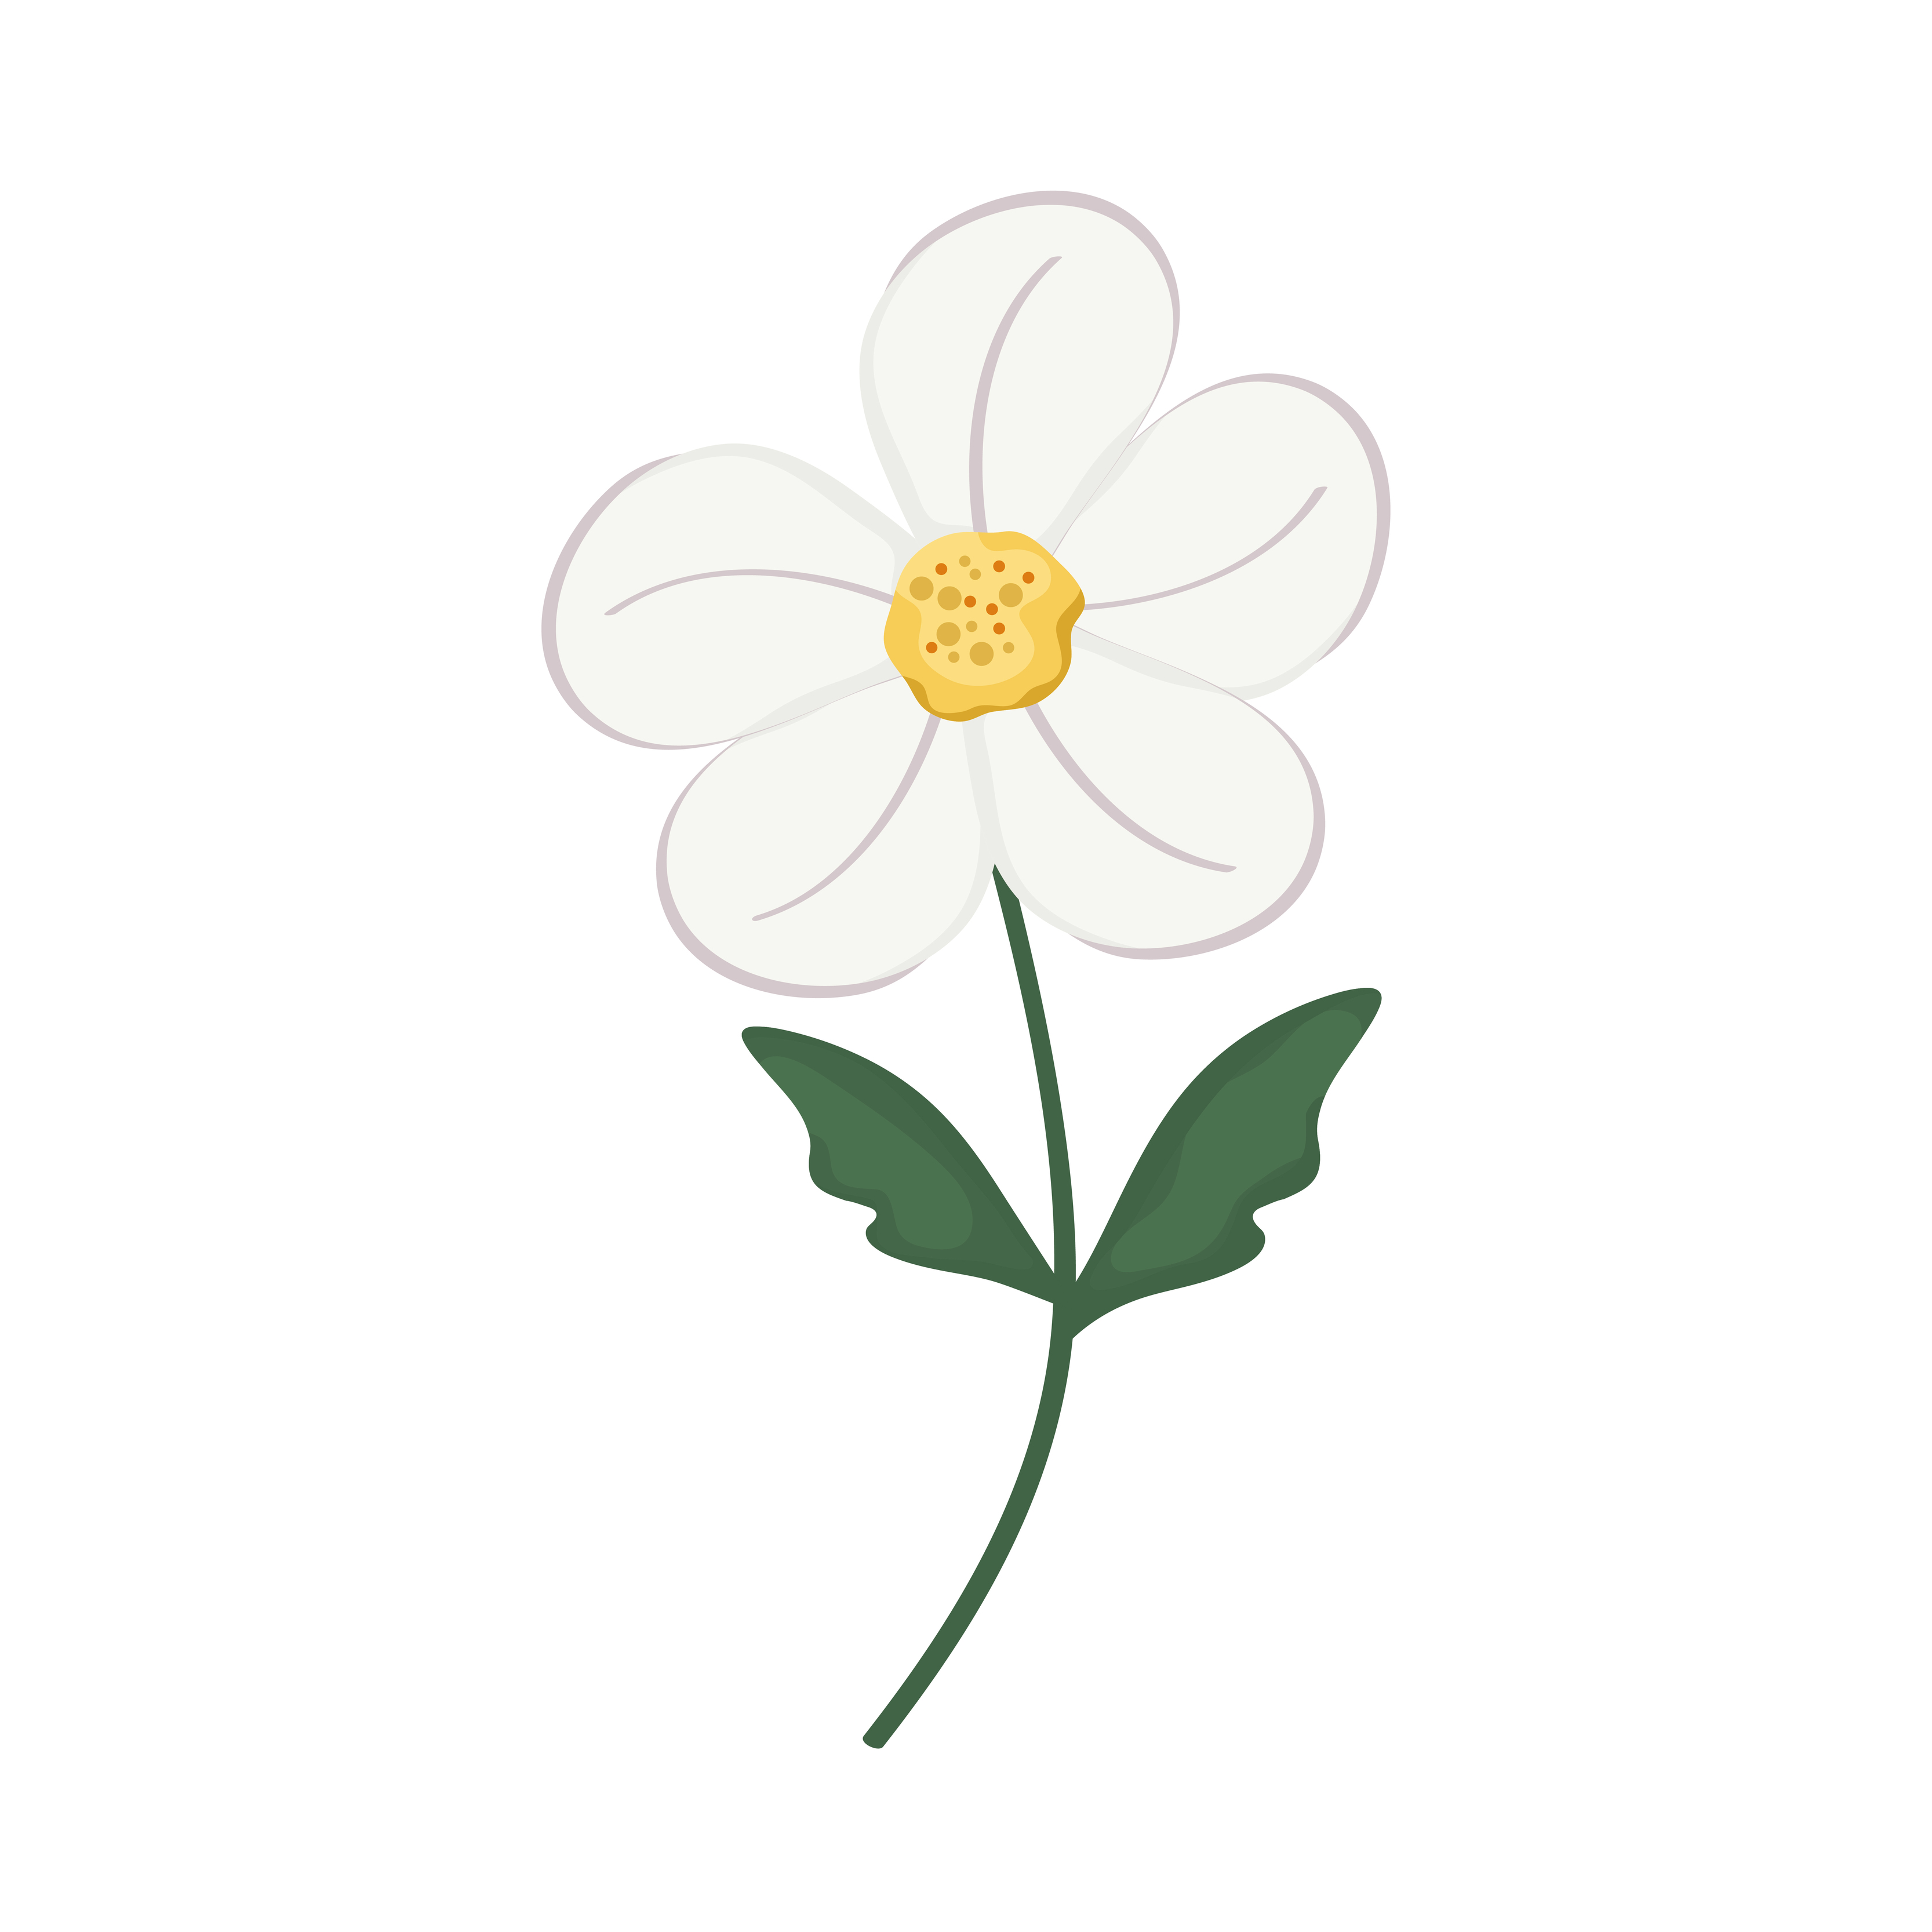 fleur blanche à cinq pétales 4103800 - Telecharger Vectoriel Gratuit,  Clipart Graphique, Vecteur Dessins et Pictogramme Gratuit